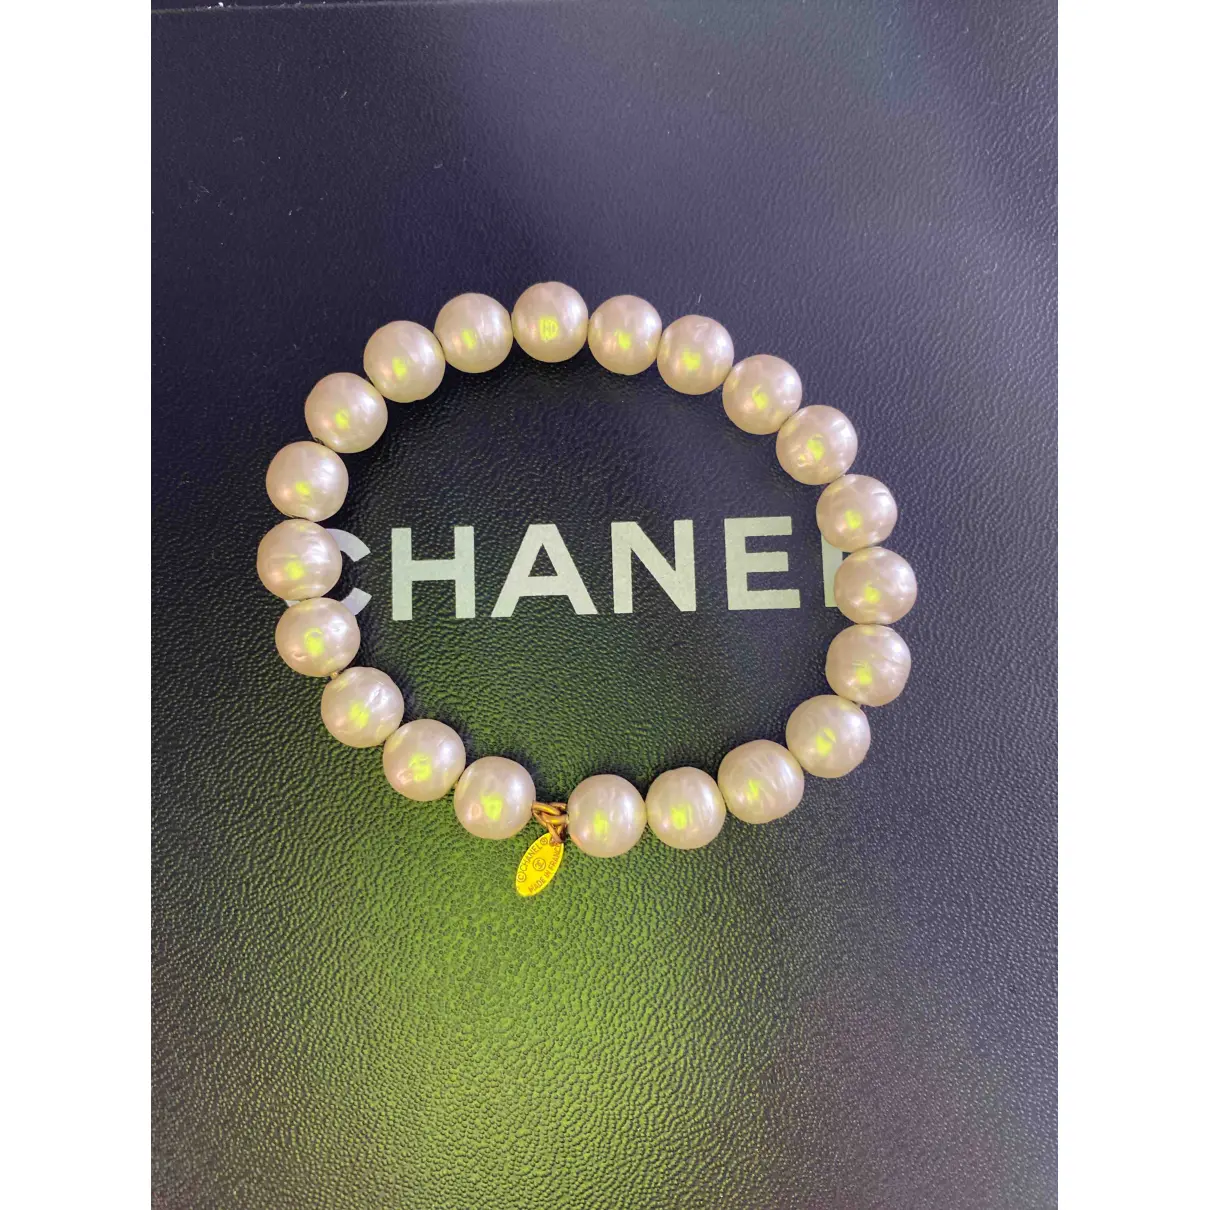 Buy Chanel CHANEL pearls bracelet online